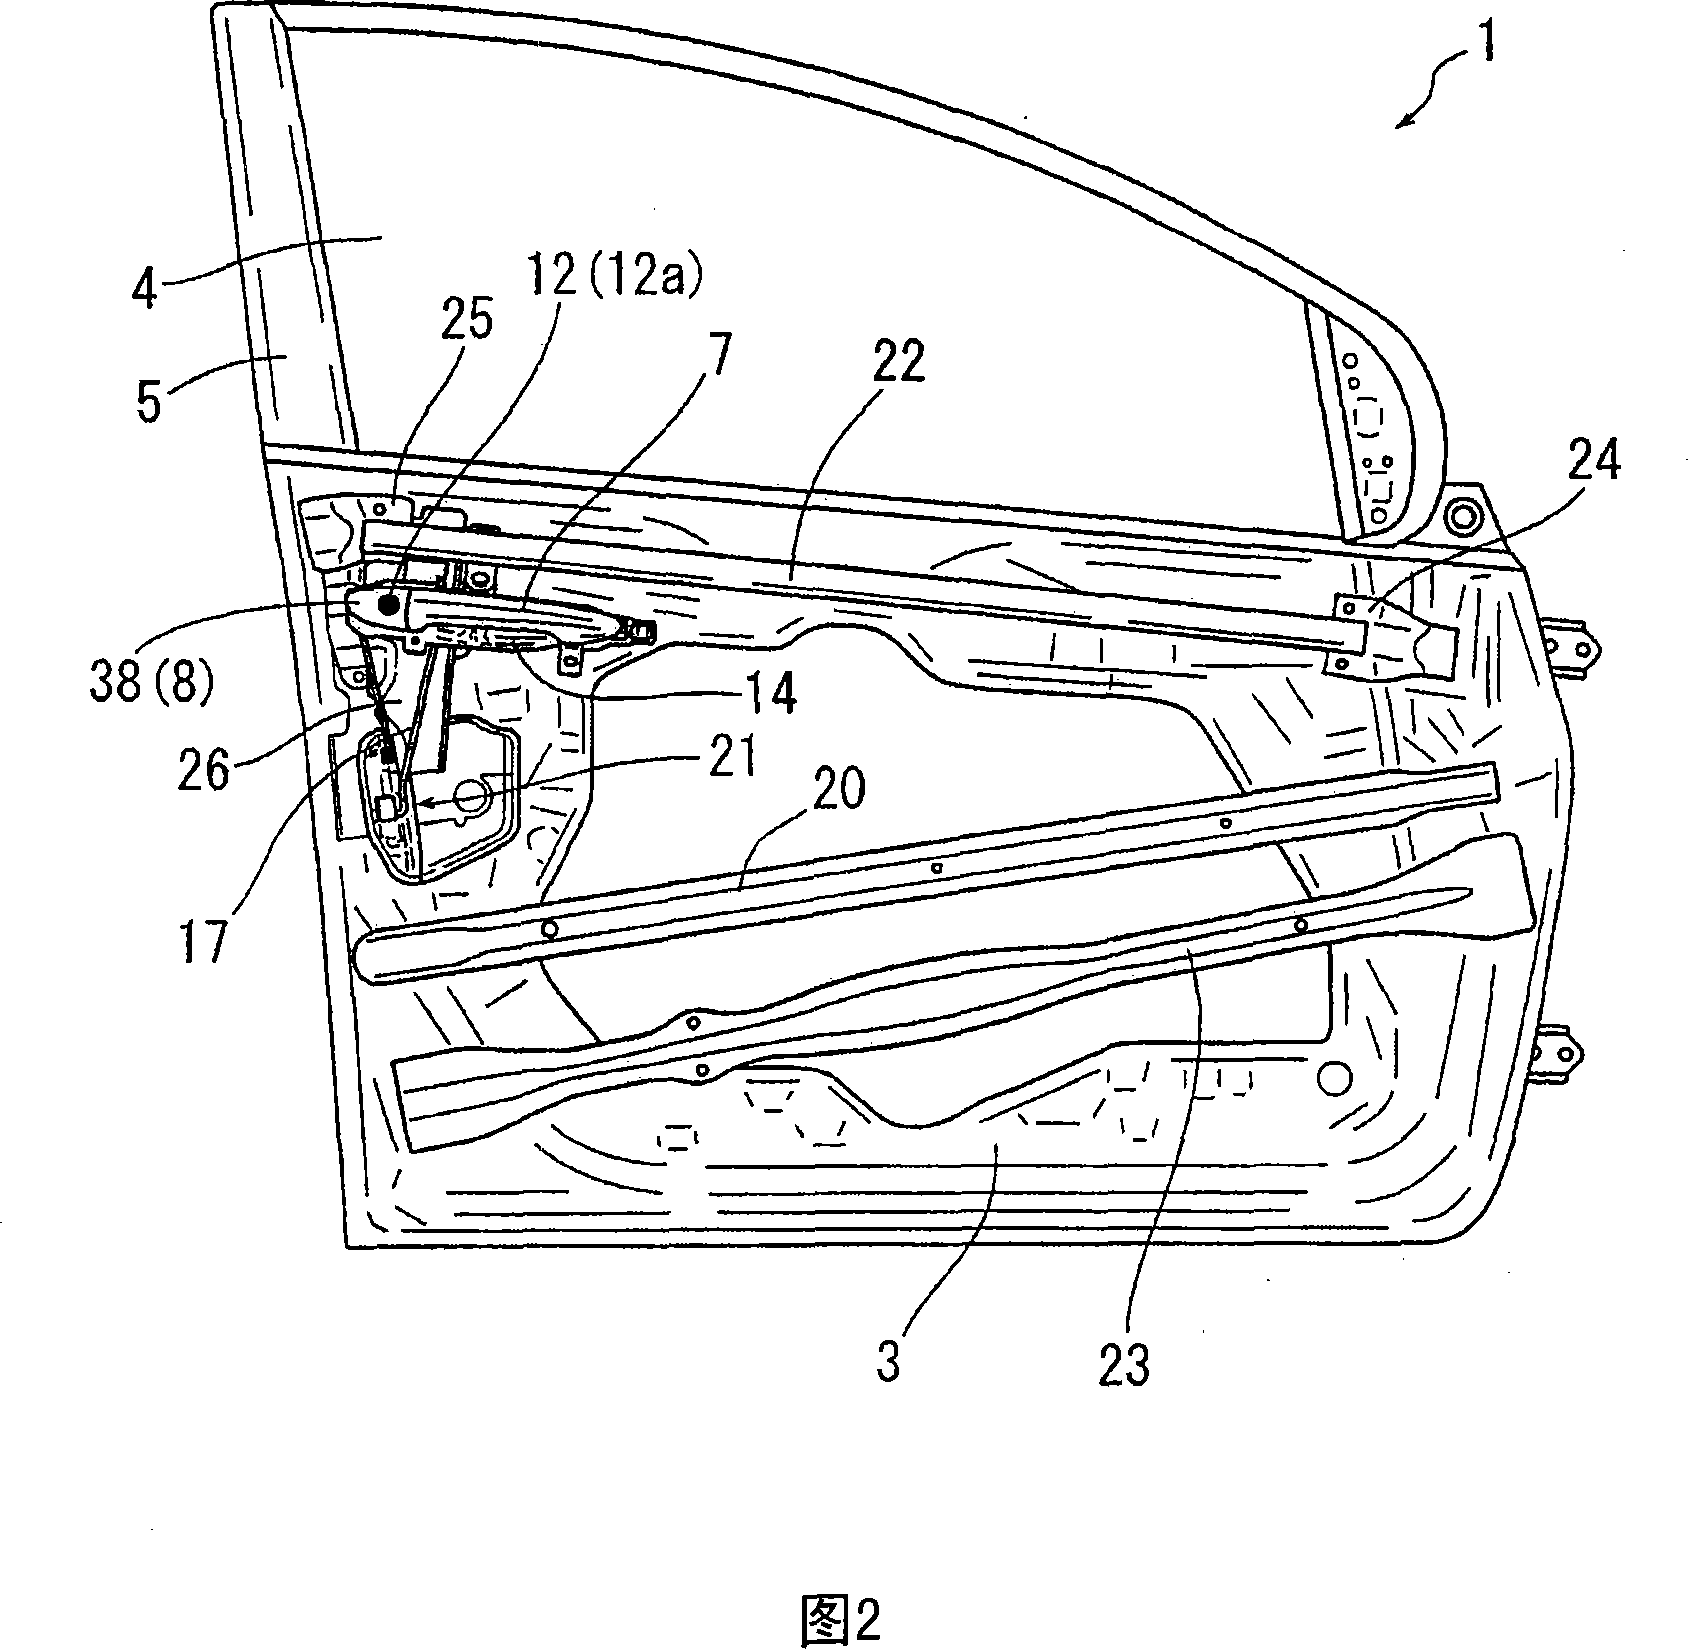 Door structure of automotive vehicle